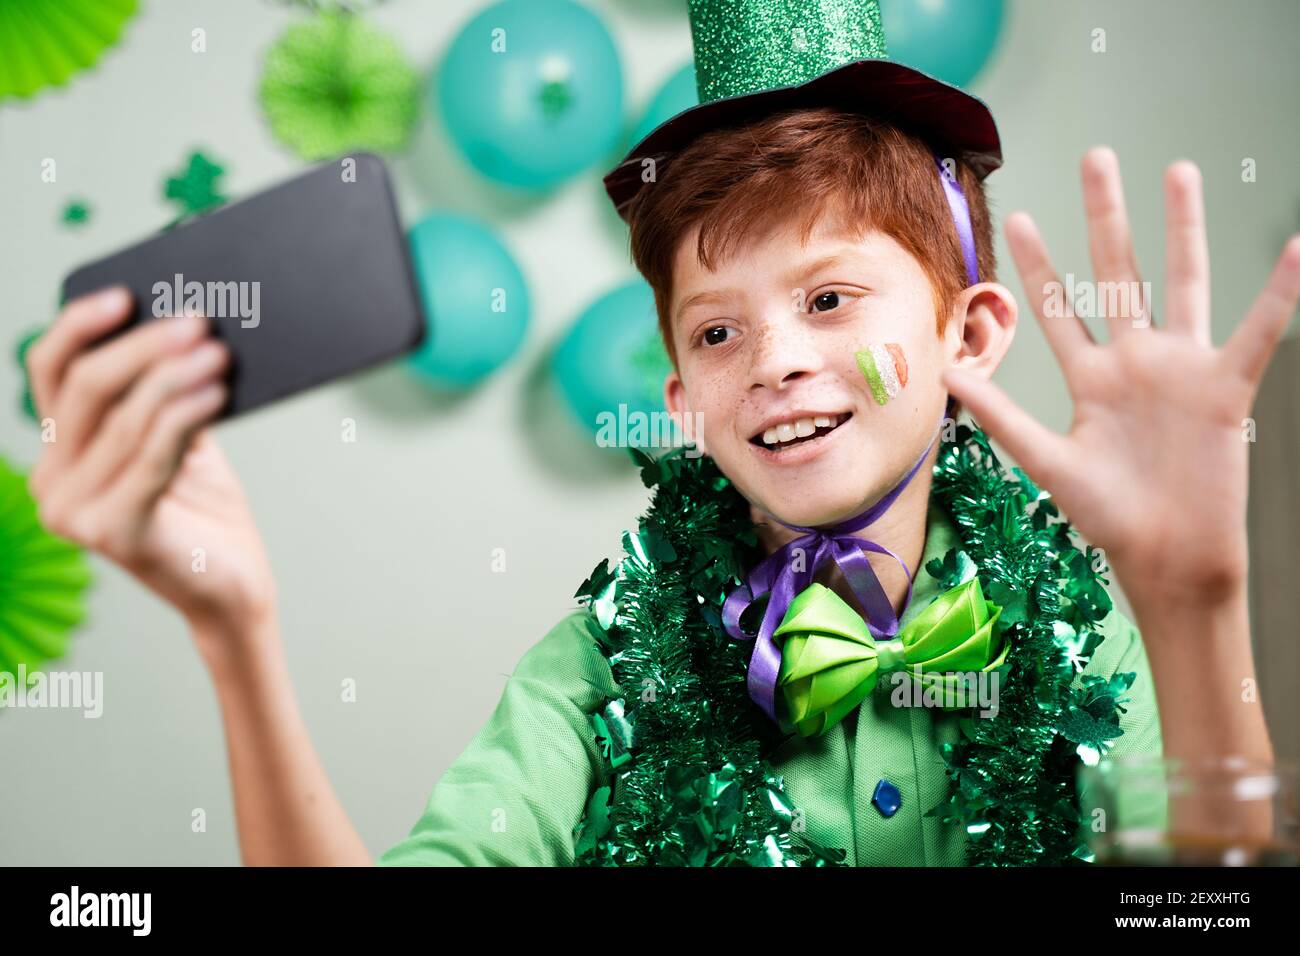 Bambino giovane in abbigliamento verde che celebra san patricks giorno dopo effettuare una videochiamata sul telefono cellulare su sfondo decorato durante coronavirus covid-19 Foto Stock